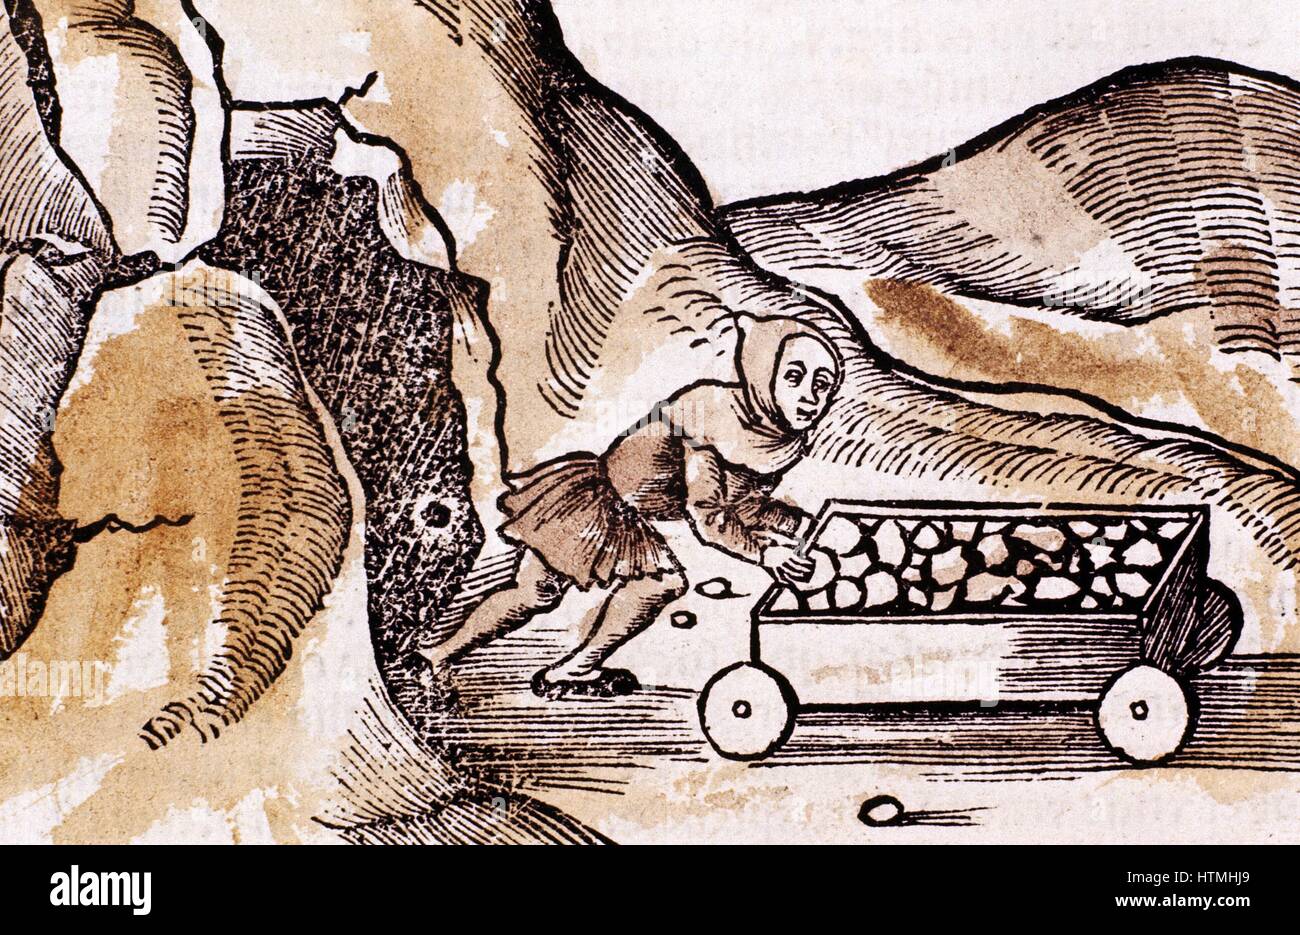 Miner portant Tunique ceinturée traditionnel et le capot et le collier, poussant le chariot complet de l'entrée de la mine. À partir de 'Margarita' Philosophica 1508 Bâle. Gravure sur bois en couleur à la main Banque D'Images